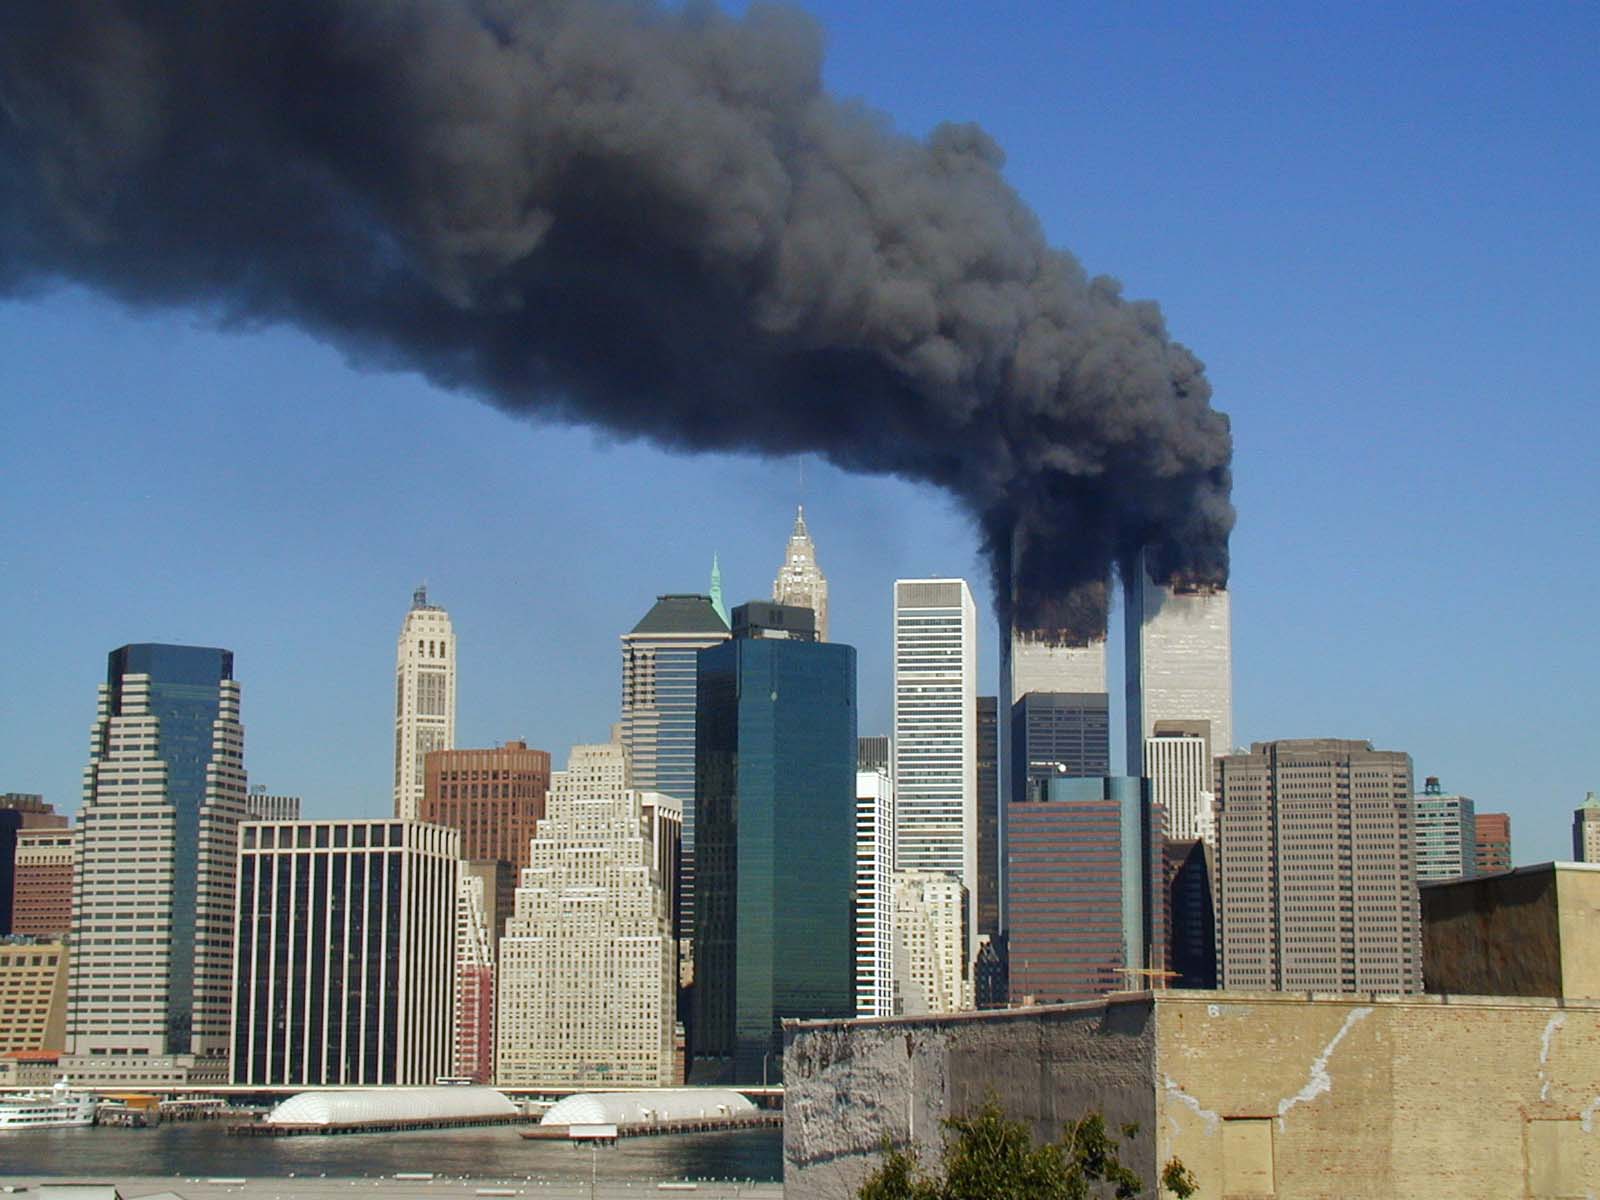 اداکار اسٹیو بسسمی نے 9/11 کو بچ جانے والوں کی تلاش میں کس طرح مدد کی